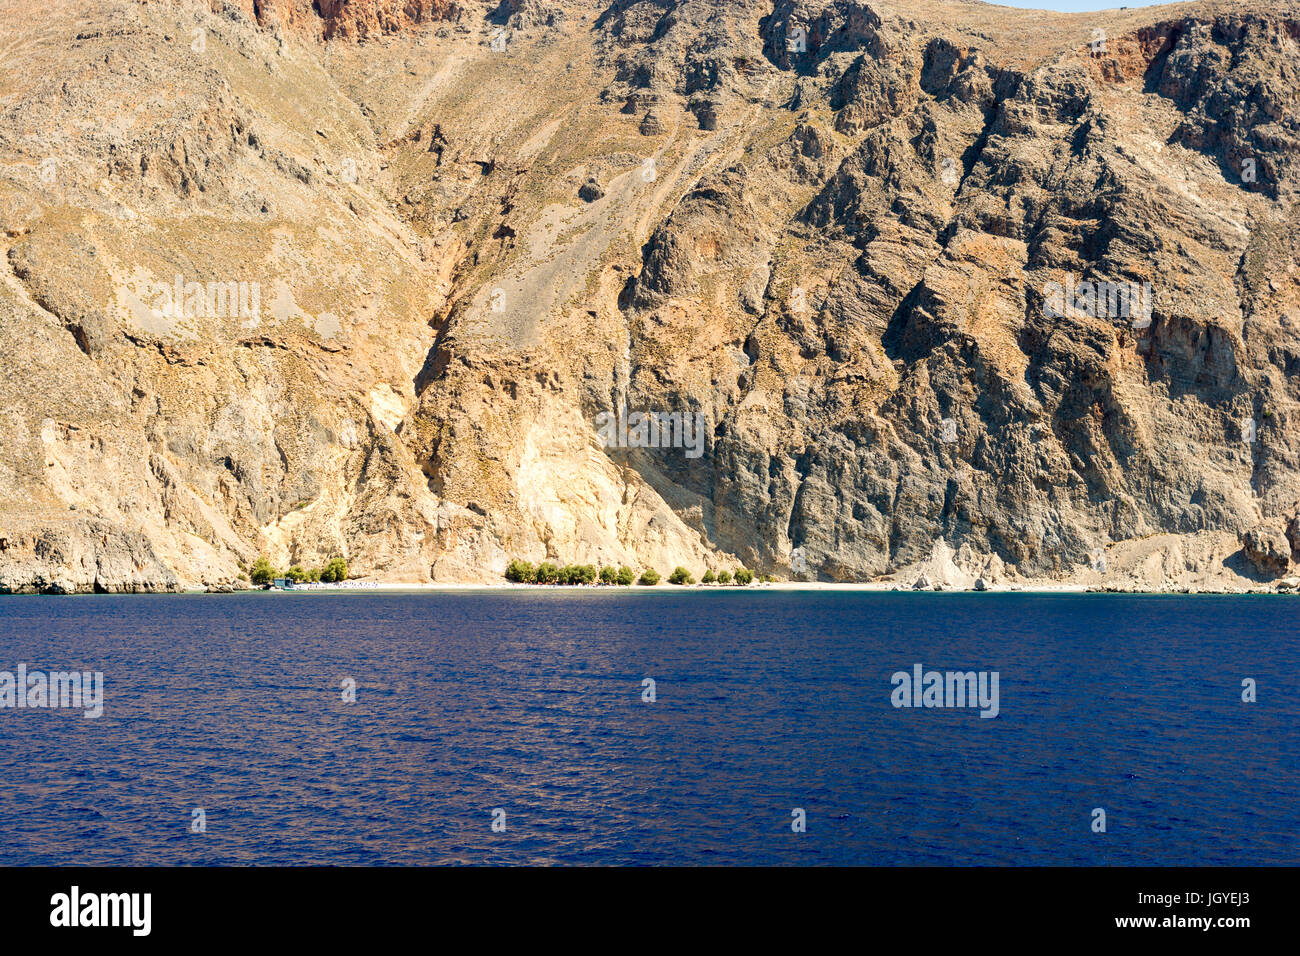 Sweetwater liegt zwischen Chora Sfakion und Loutro auf der Südwest-Küste von Kreta, Griechenland. Frisches Wasser füllt seichte Brunnen auf den Kiesstrand. Stockfoto